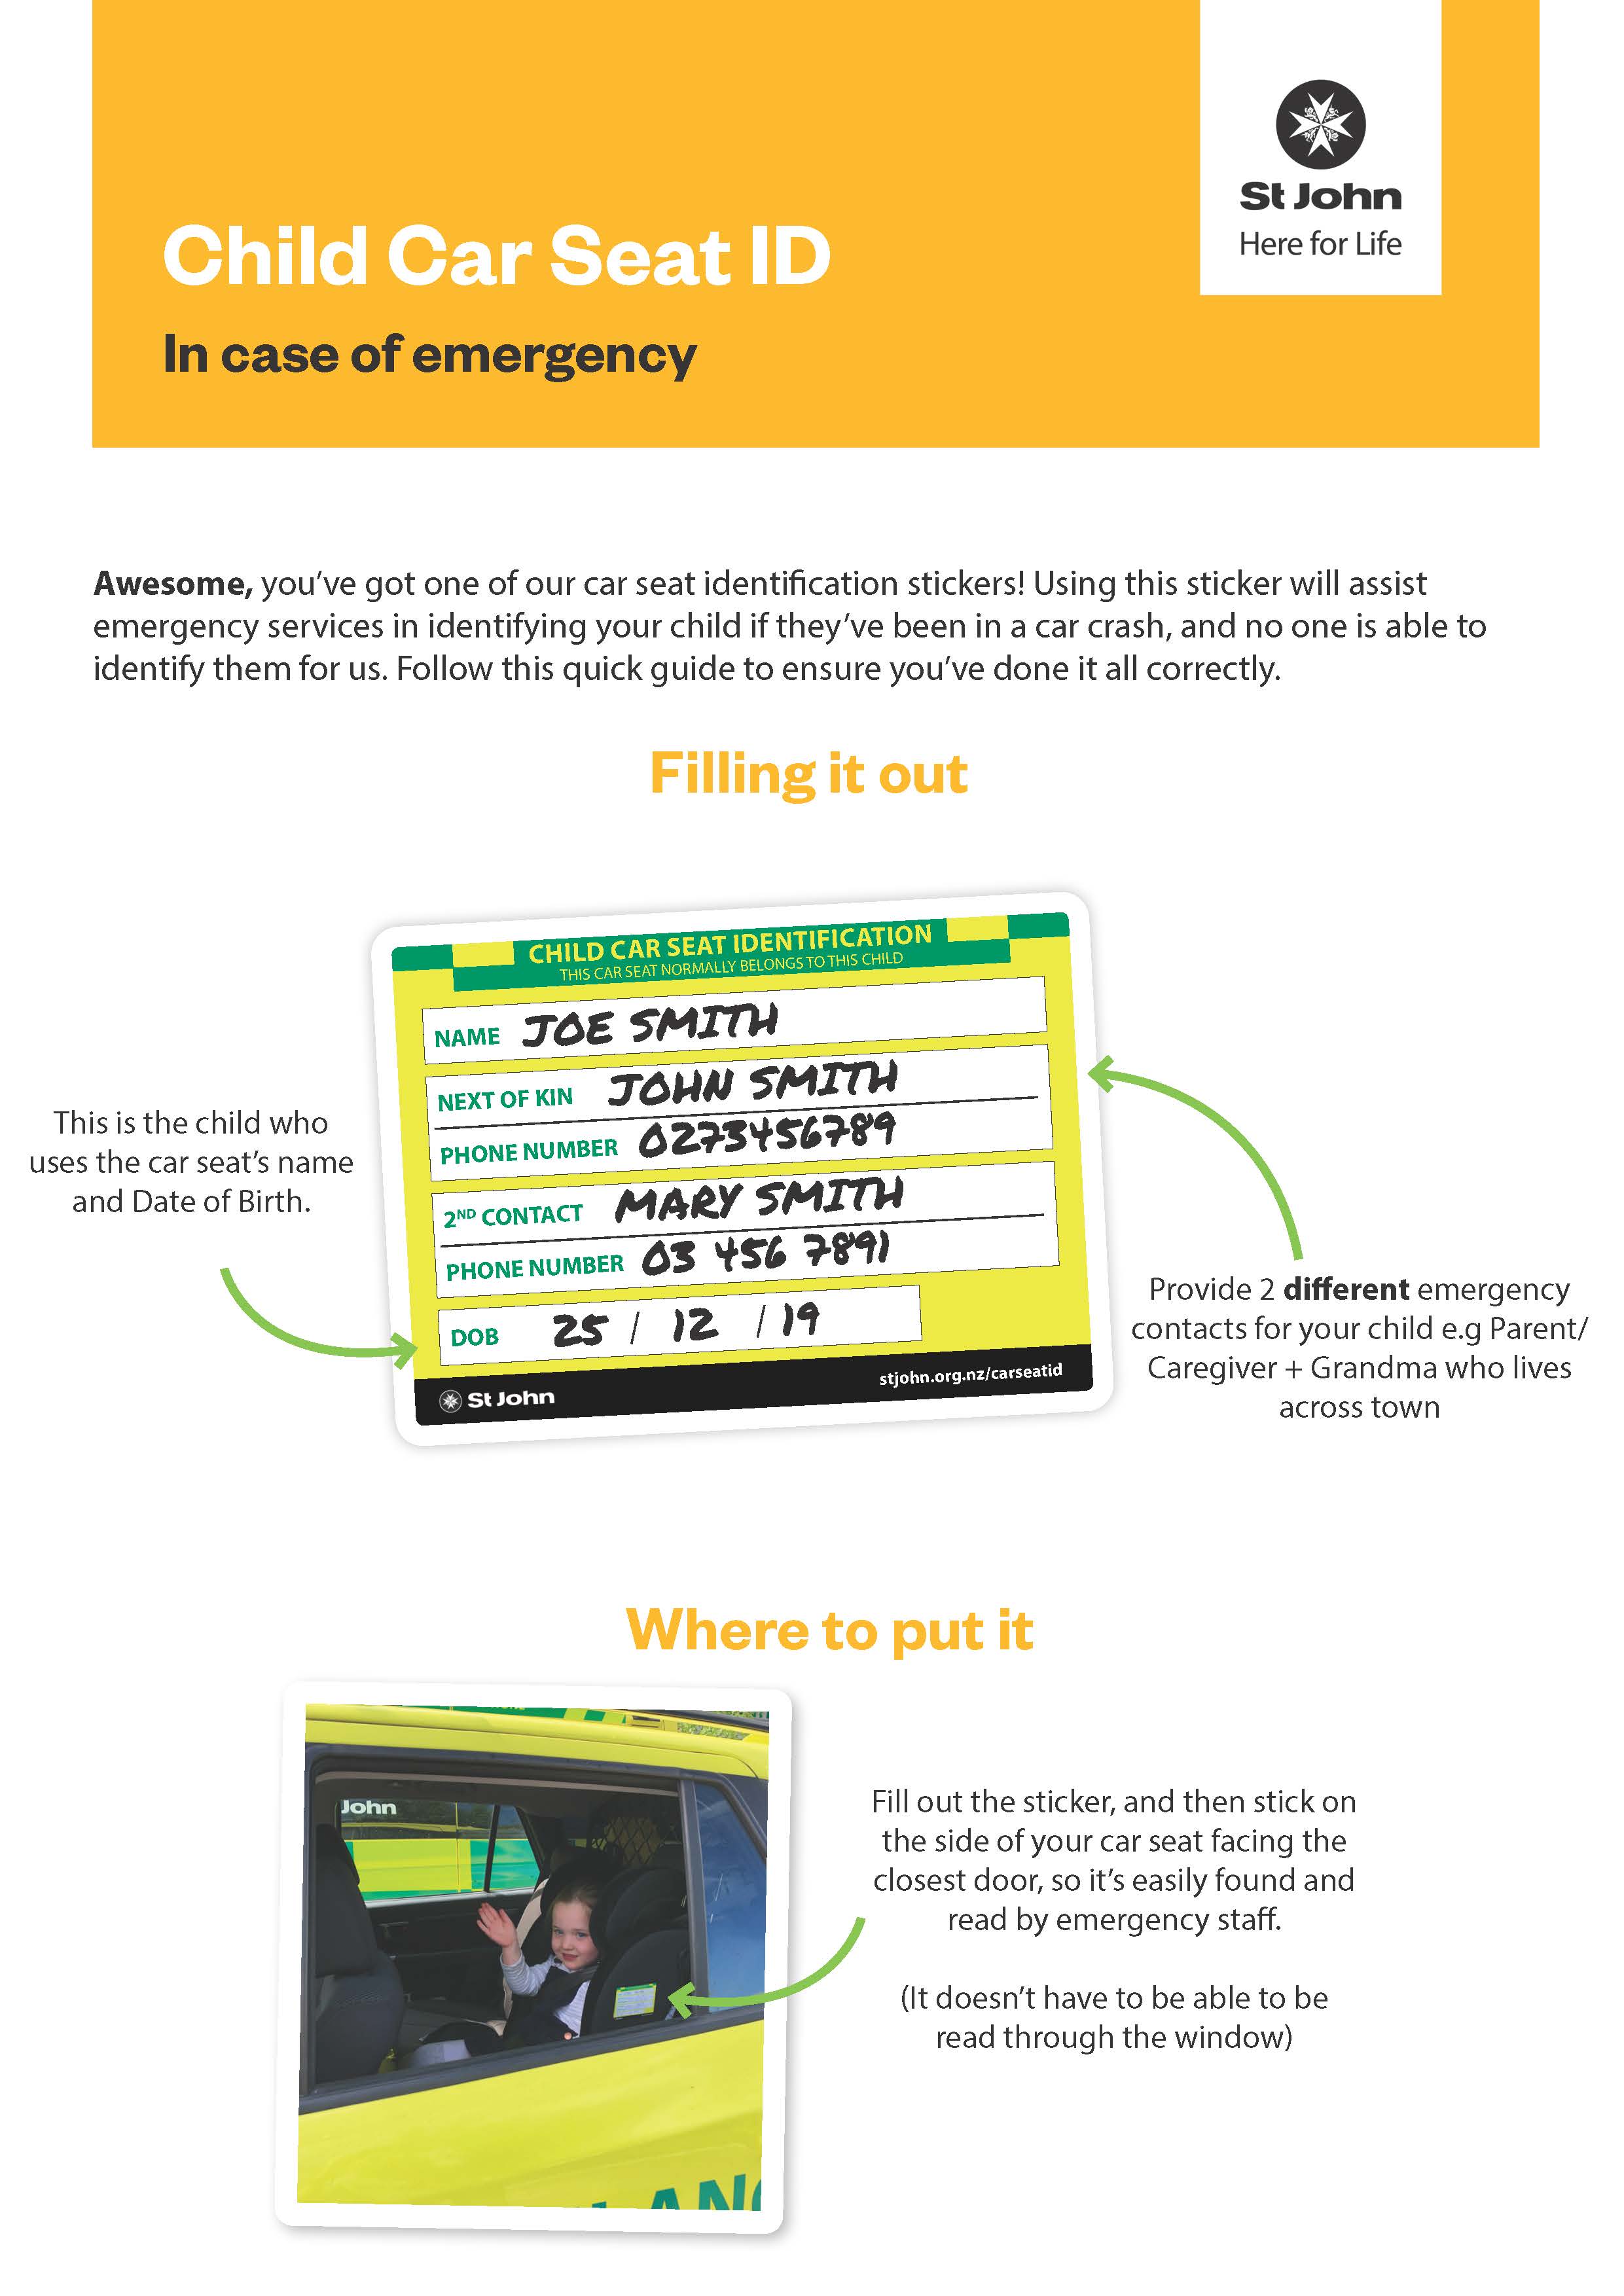 Guide in case of emergency